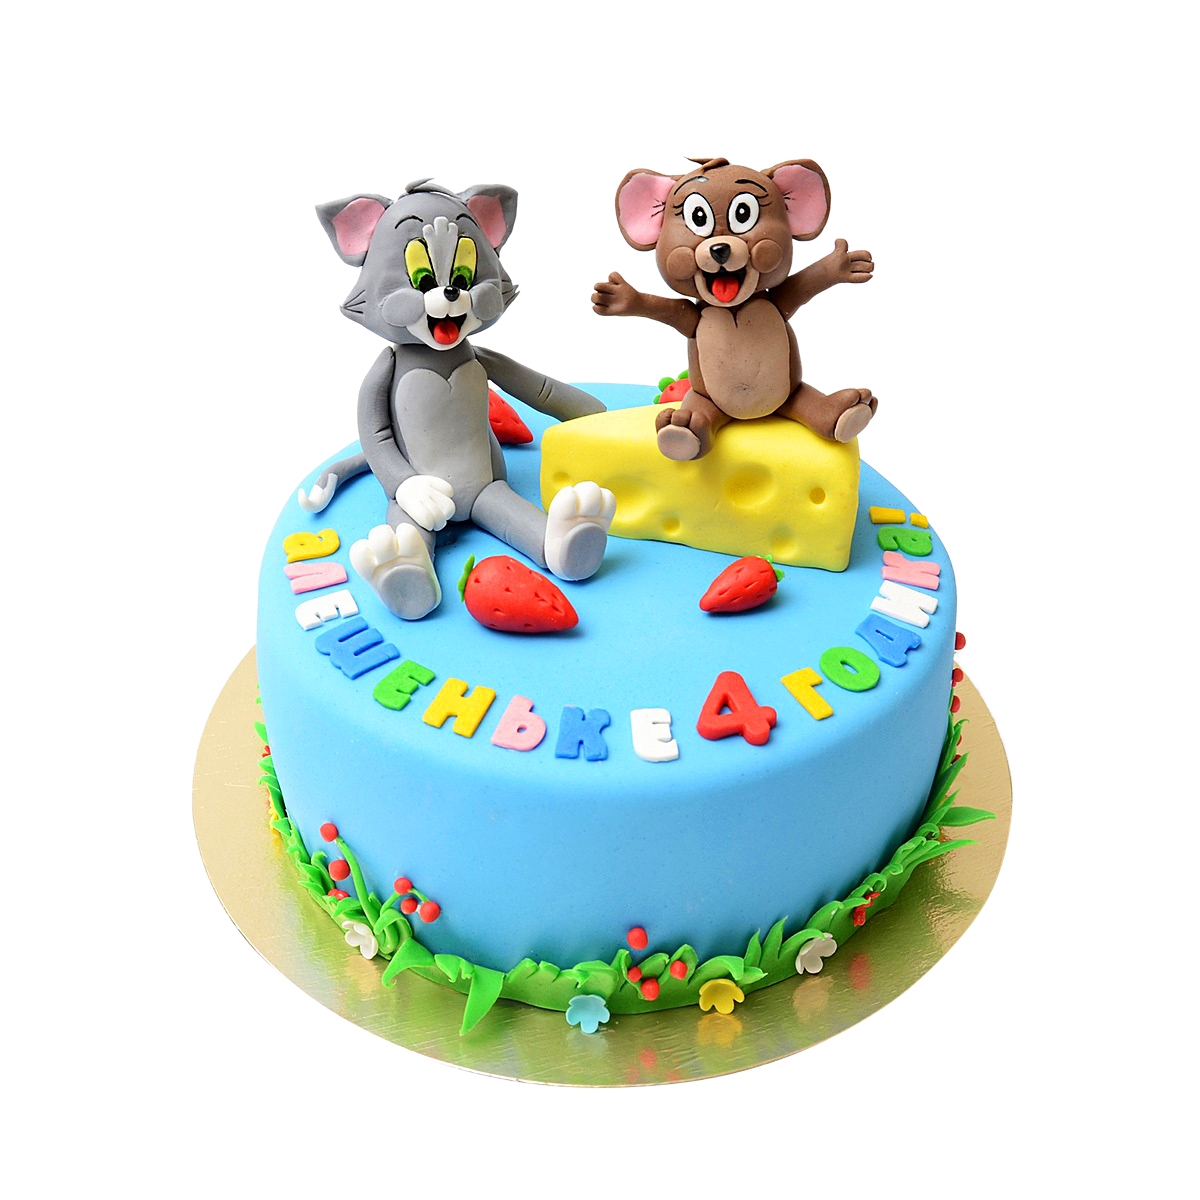 Cake to order - For Kids Cake to order - For Kids